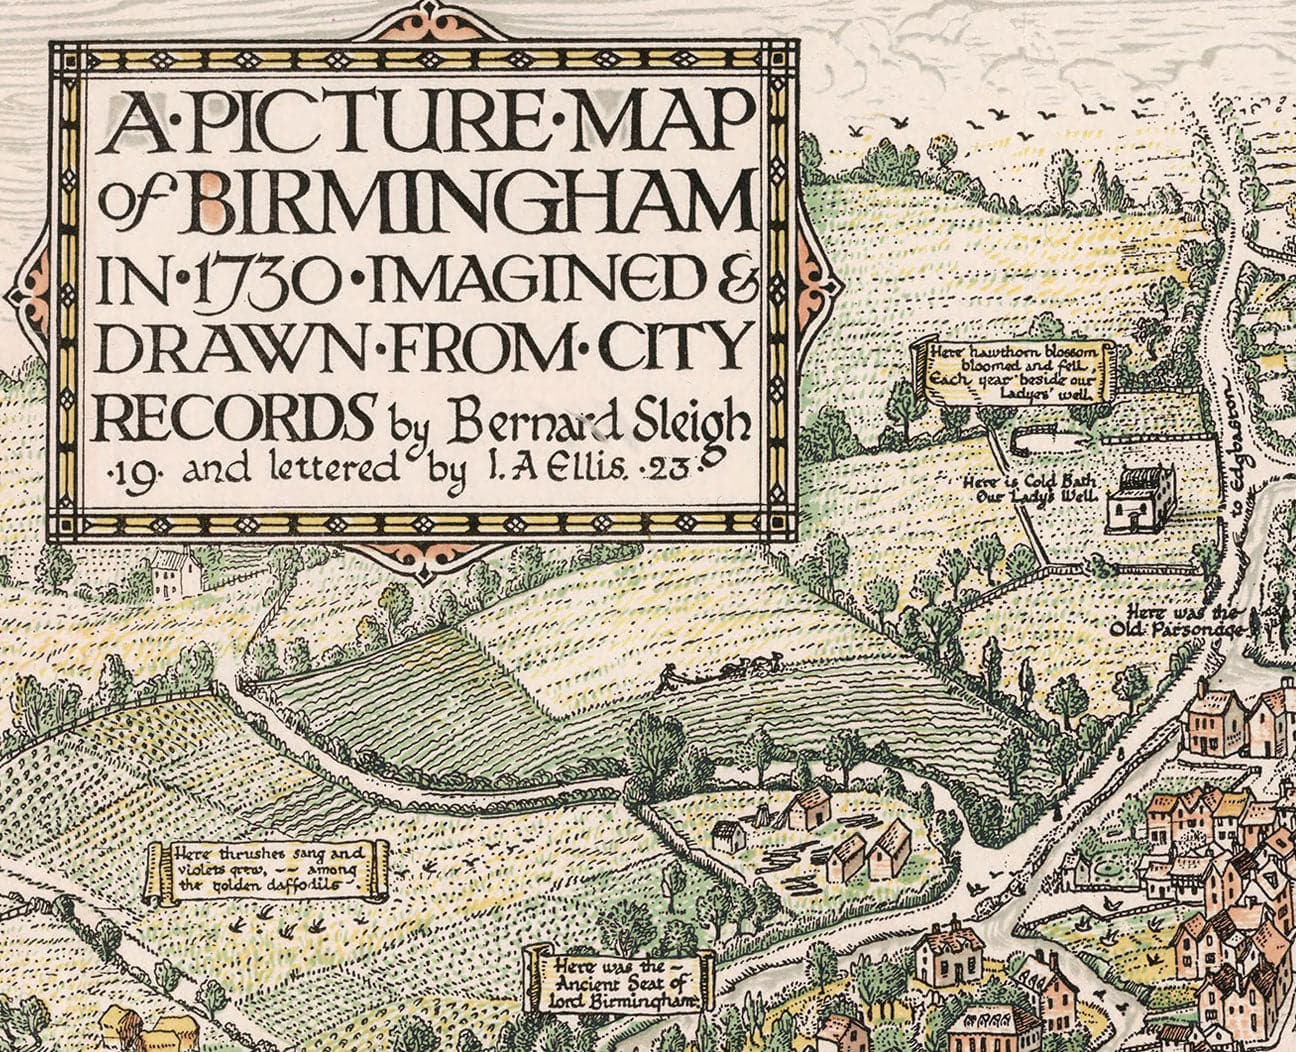 Birmingham Gesichtsmaske / Neck Gaiter mit Vintage-Karte Druck von Birmingham im Jahr 1730